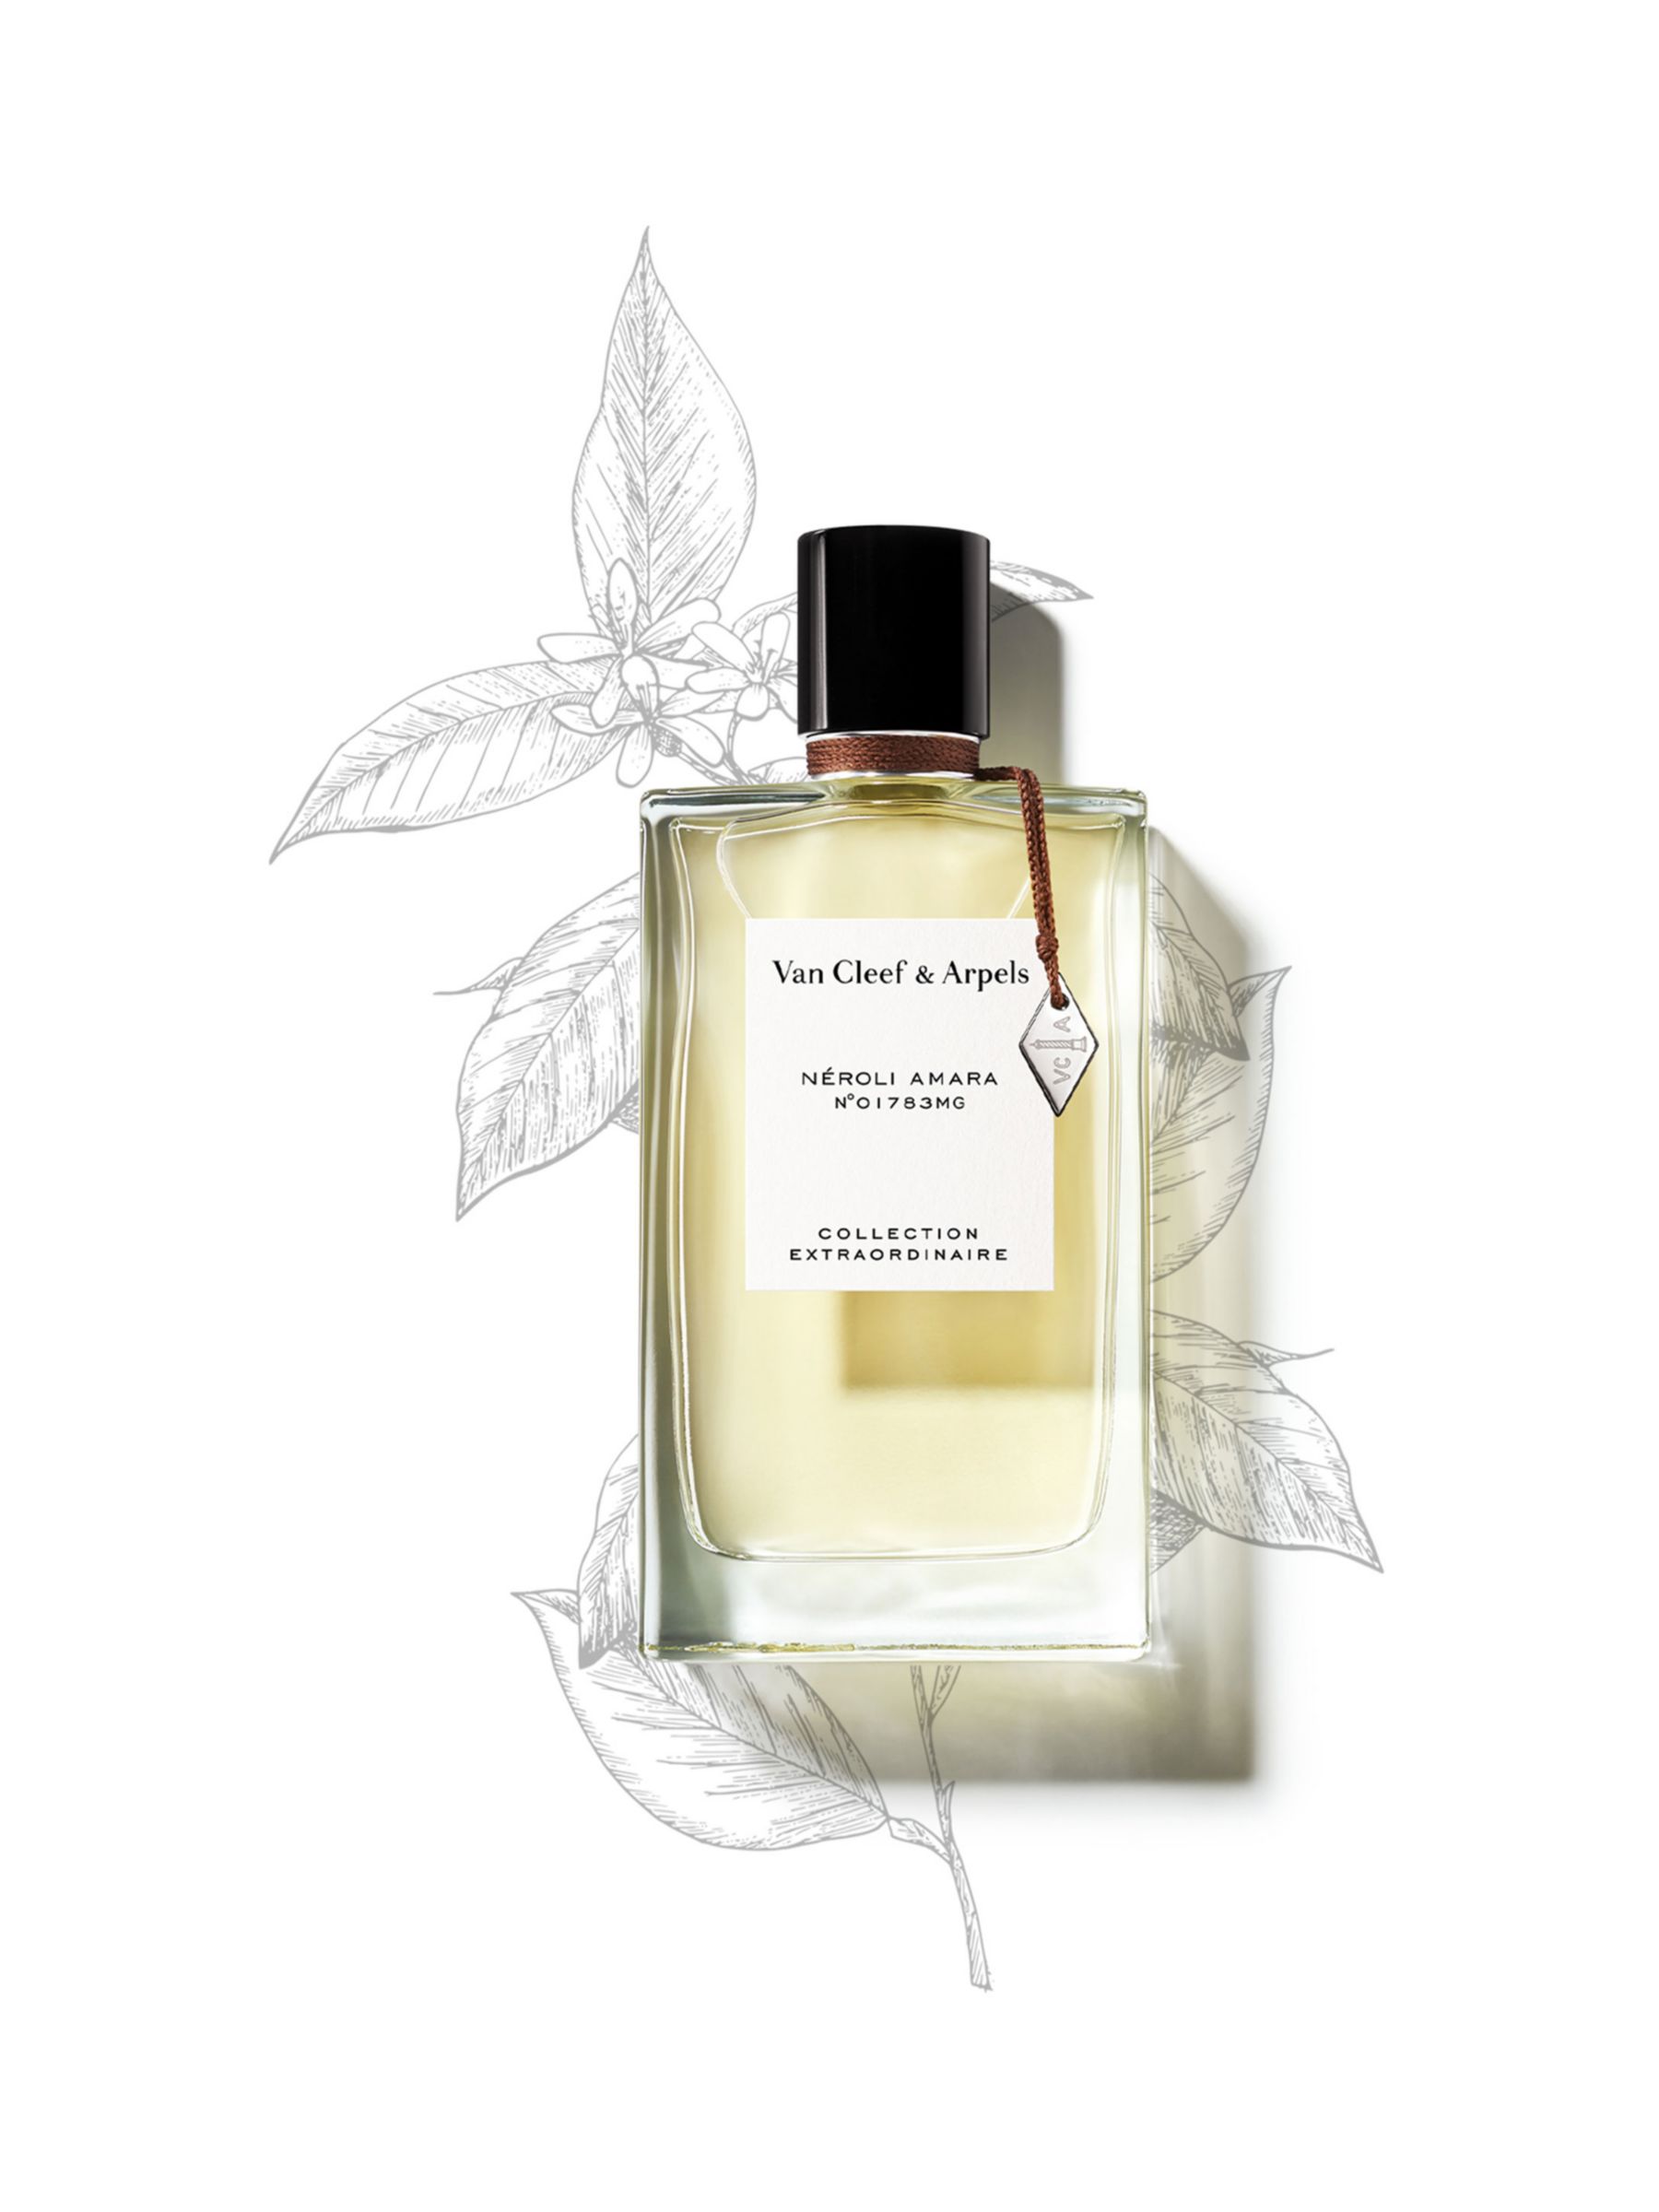 Van Cleef & Arpels Collection Extraordinaire Neroli Amara Eau de Parfum, 75ml 3